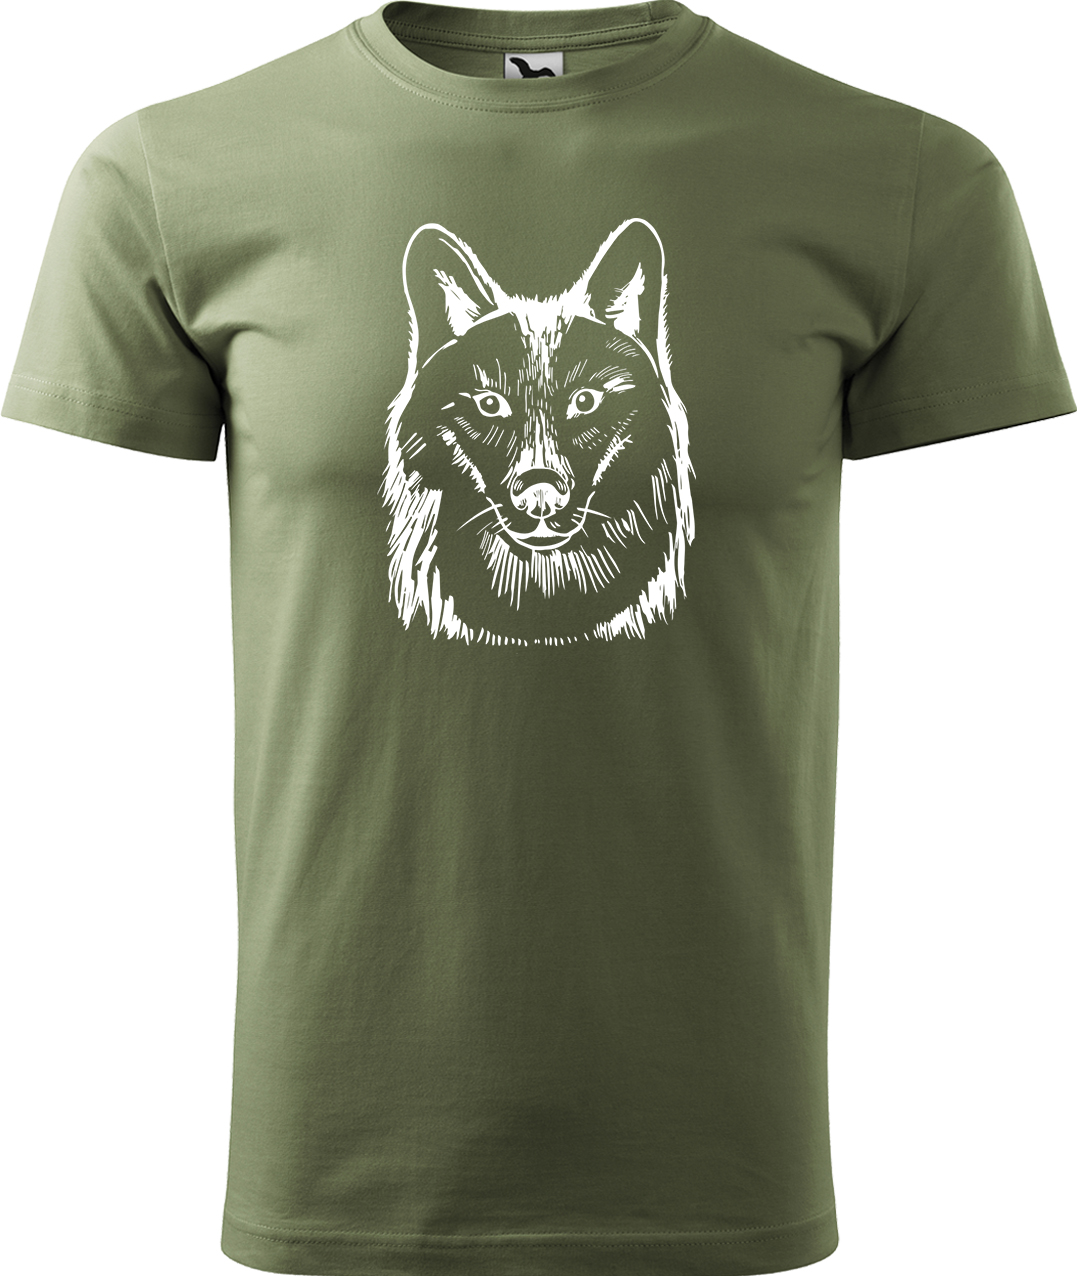 Pánské tričko s vlkem - Kresba vlka Velikost: M, Barva: Světlá khaki (28), Střih: pánský